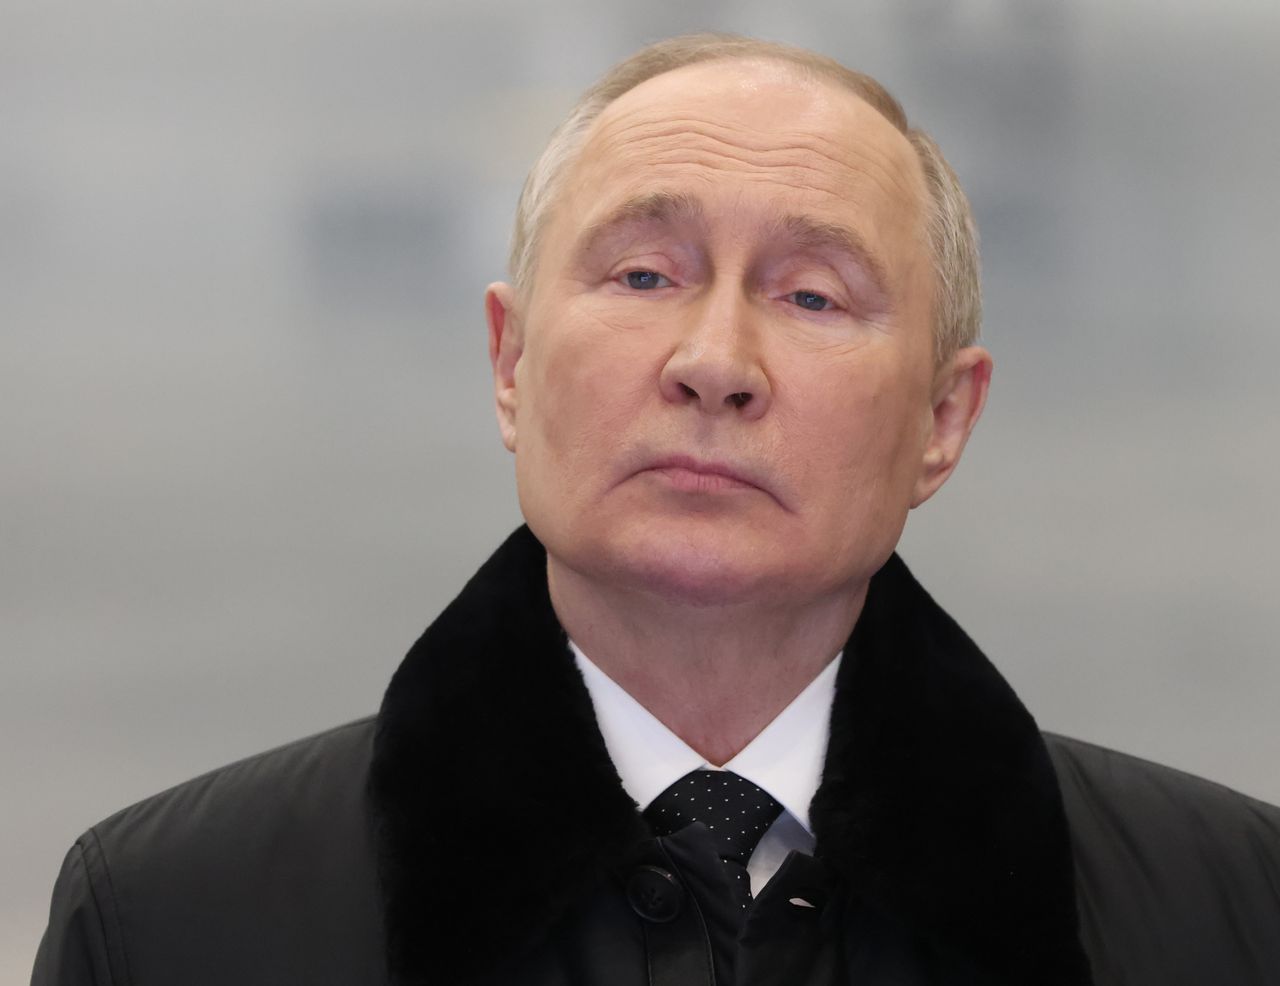 Groźby Putina. Ekspert mówi o "najczarniejszych scenariuszach"